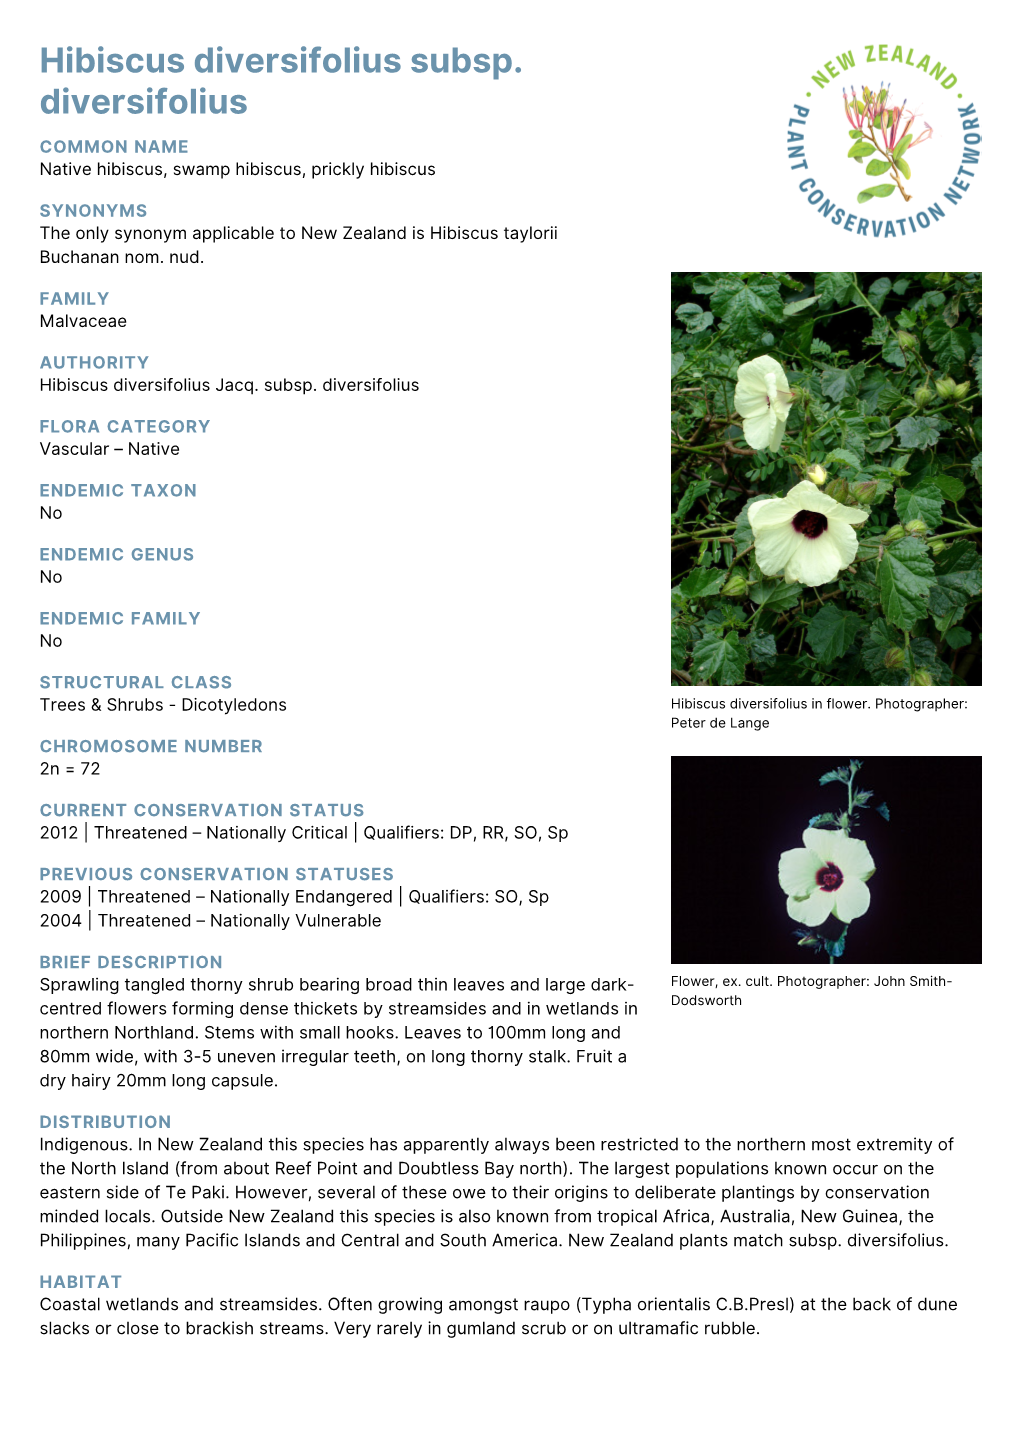 Hibiscus Diversifolius Subsp. Diversifolius